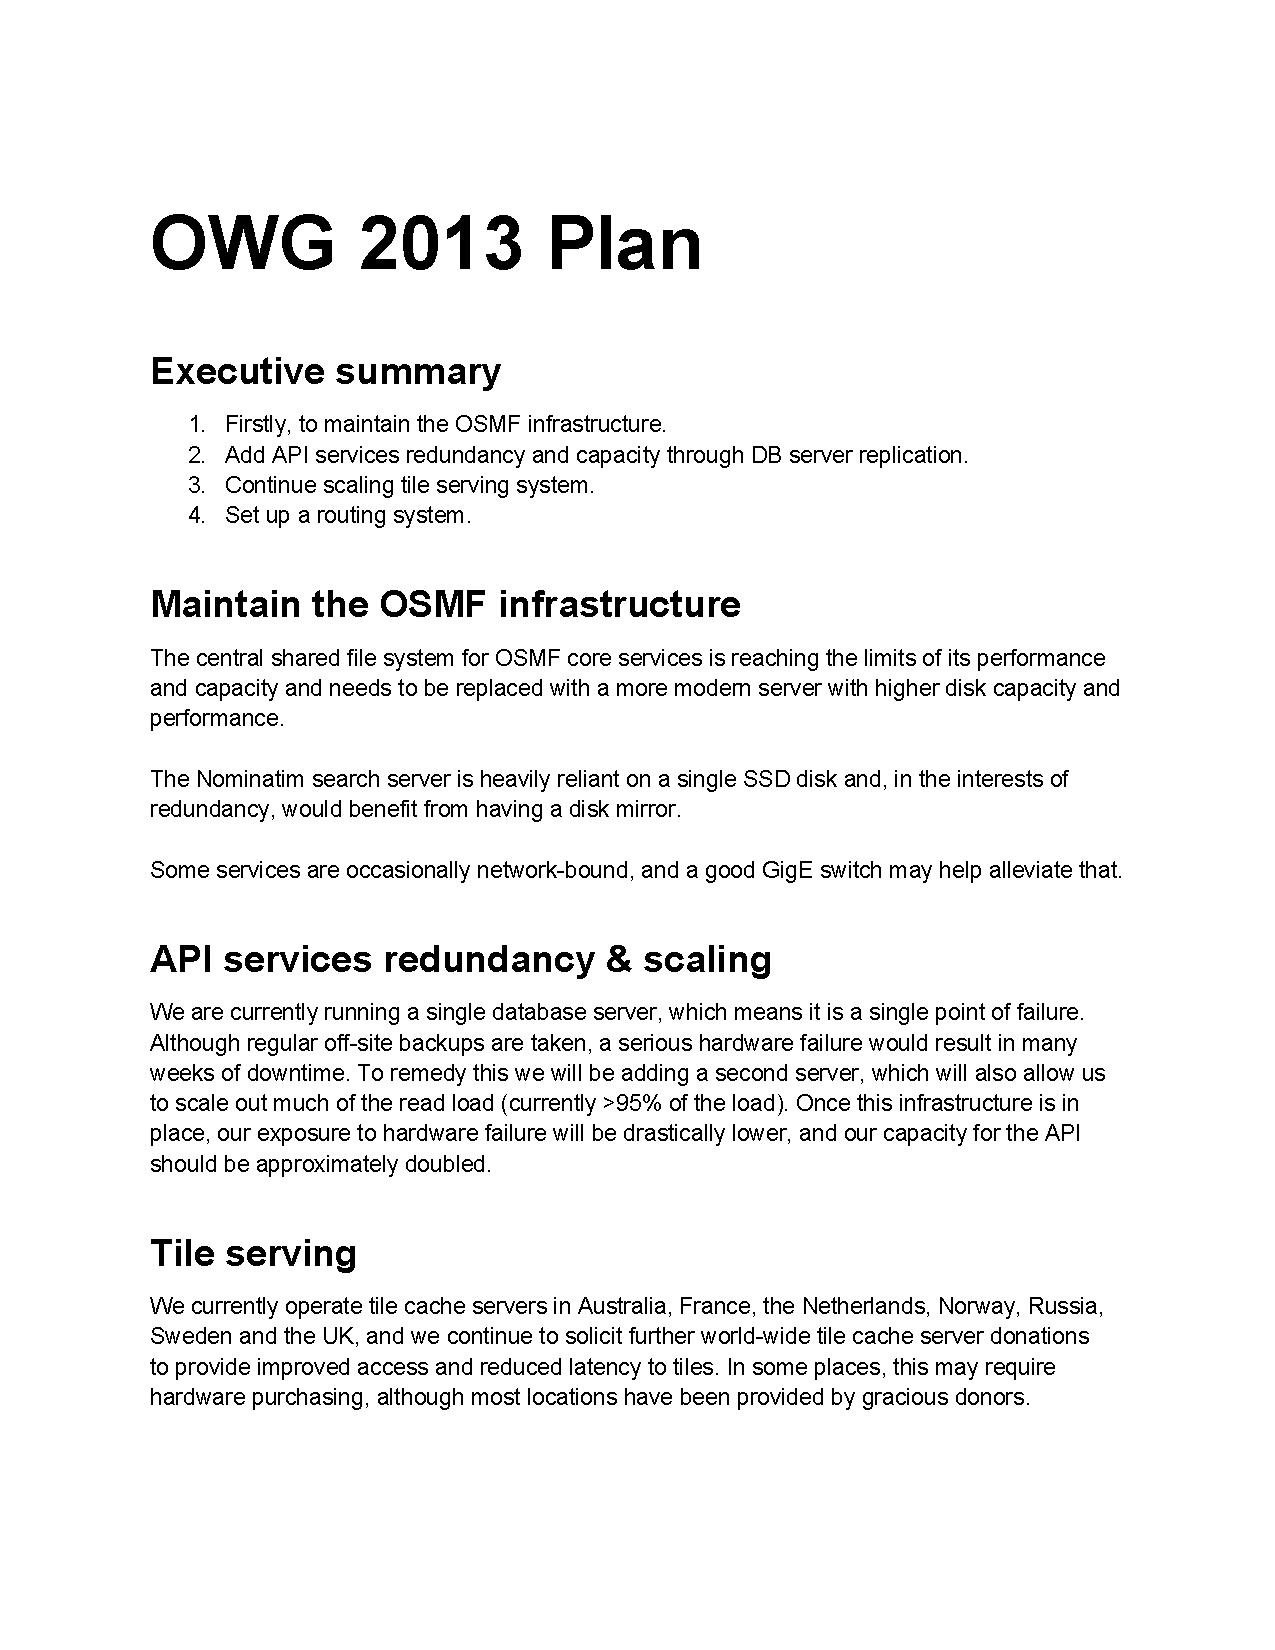 OWG Plan 2013.pdf